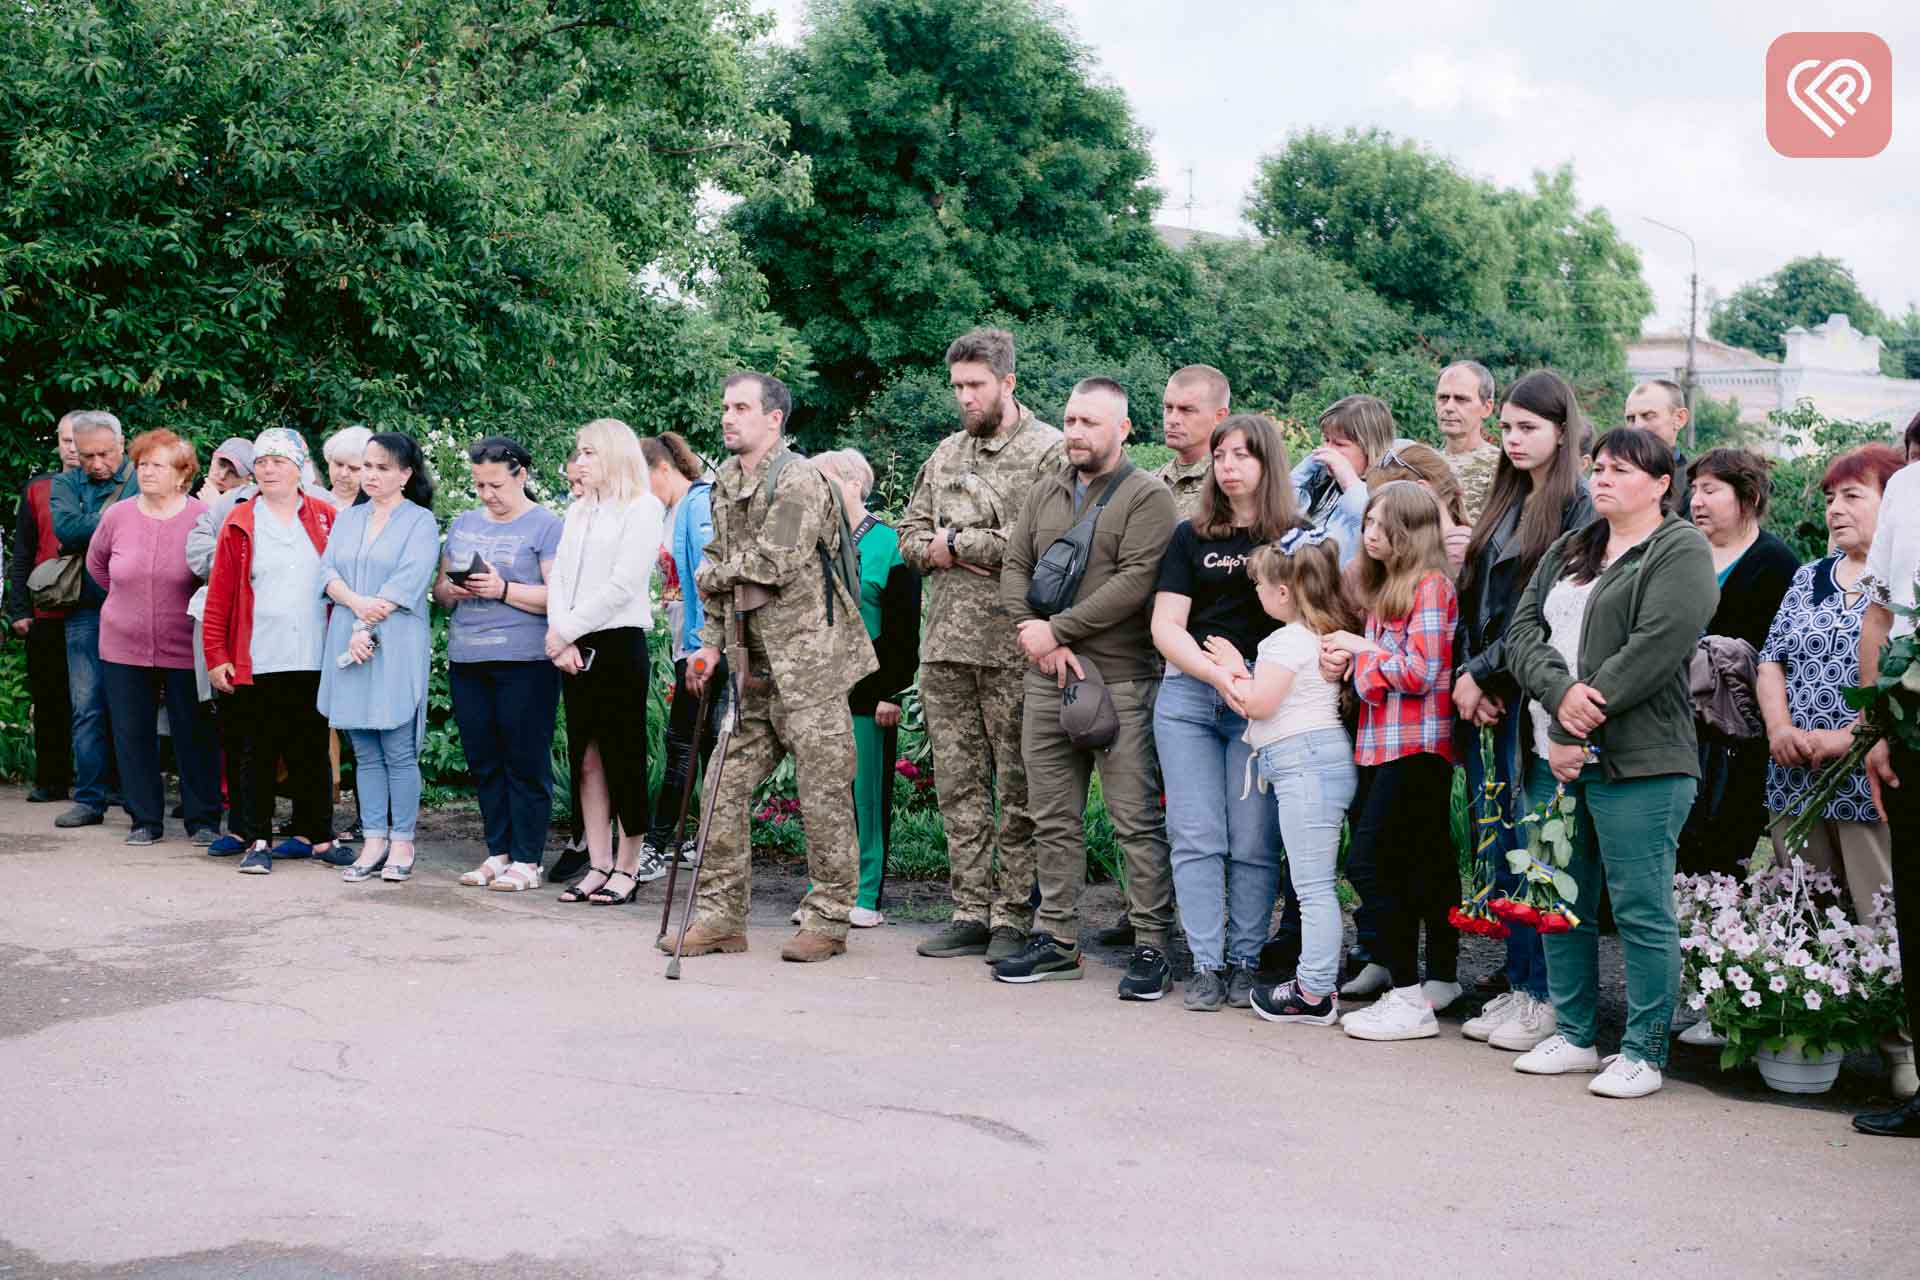 У Переяславі вшанували пам’ять воїна Володимира Кочина: меморіальну дошку встановили на фасаді ВУЖКГ, де він працював